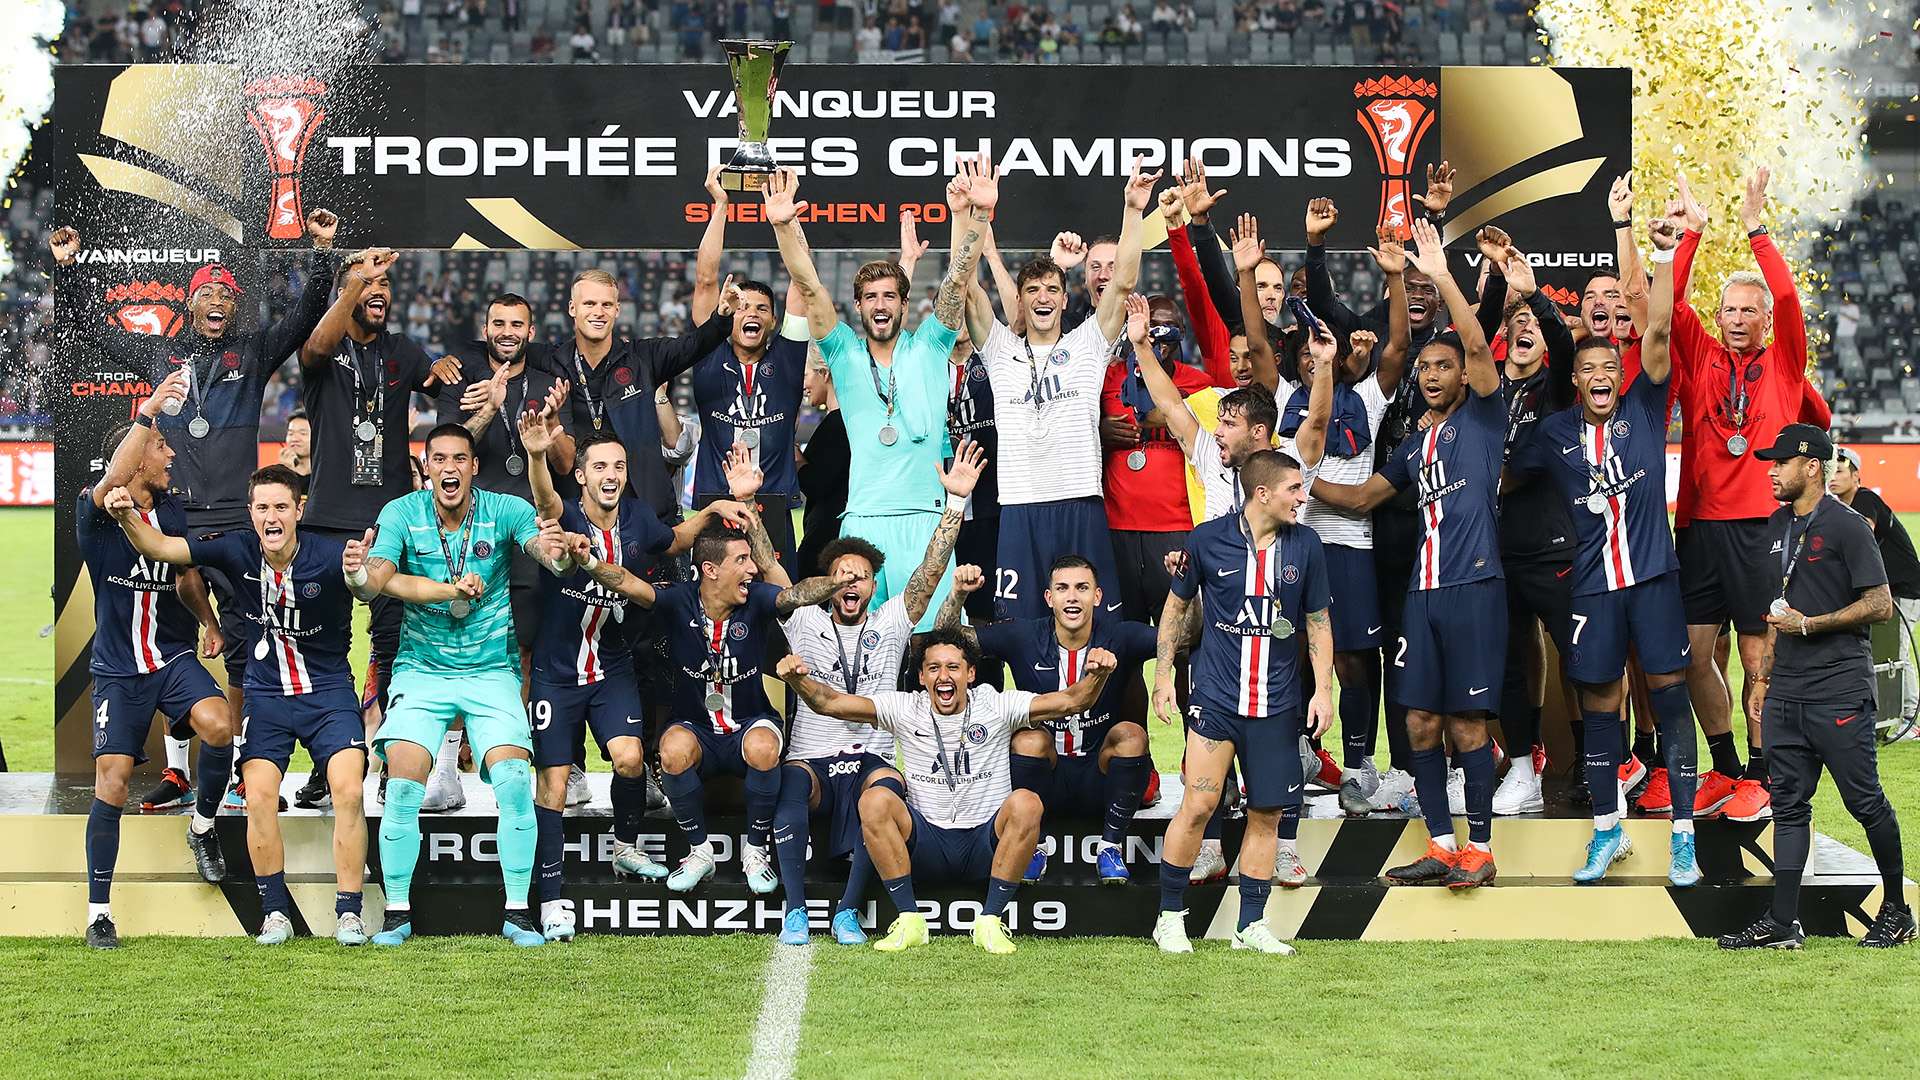 PSG Trophee des Champions 2019